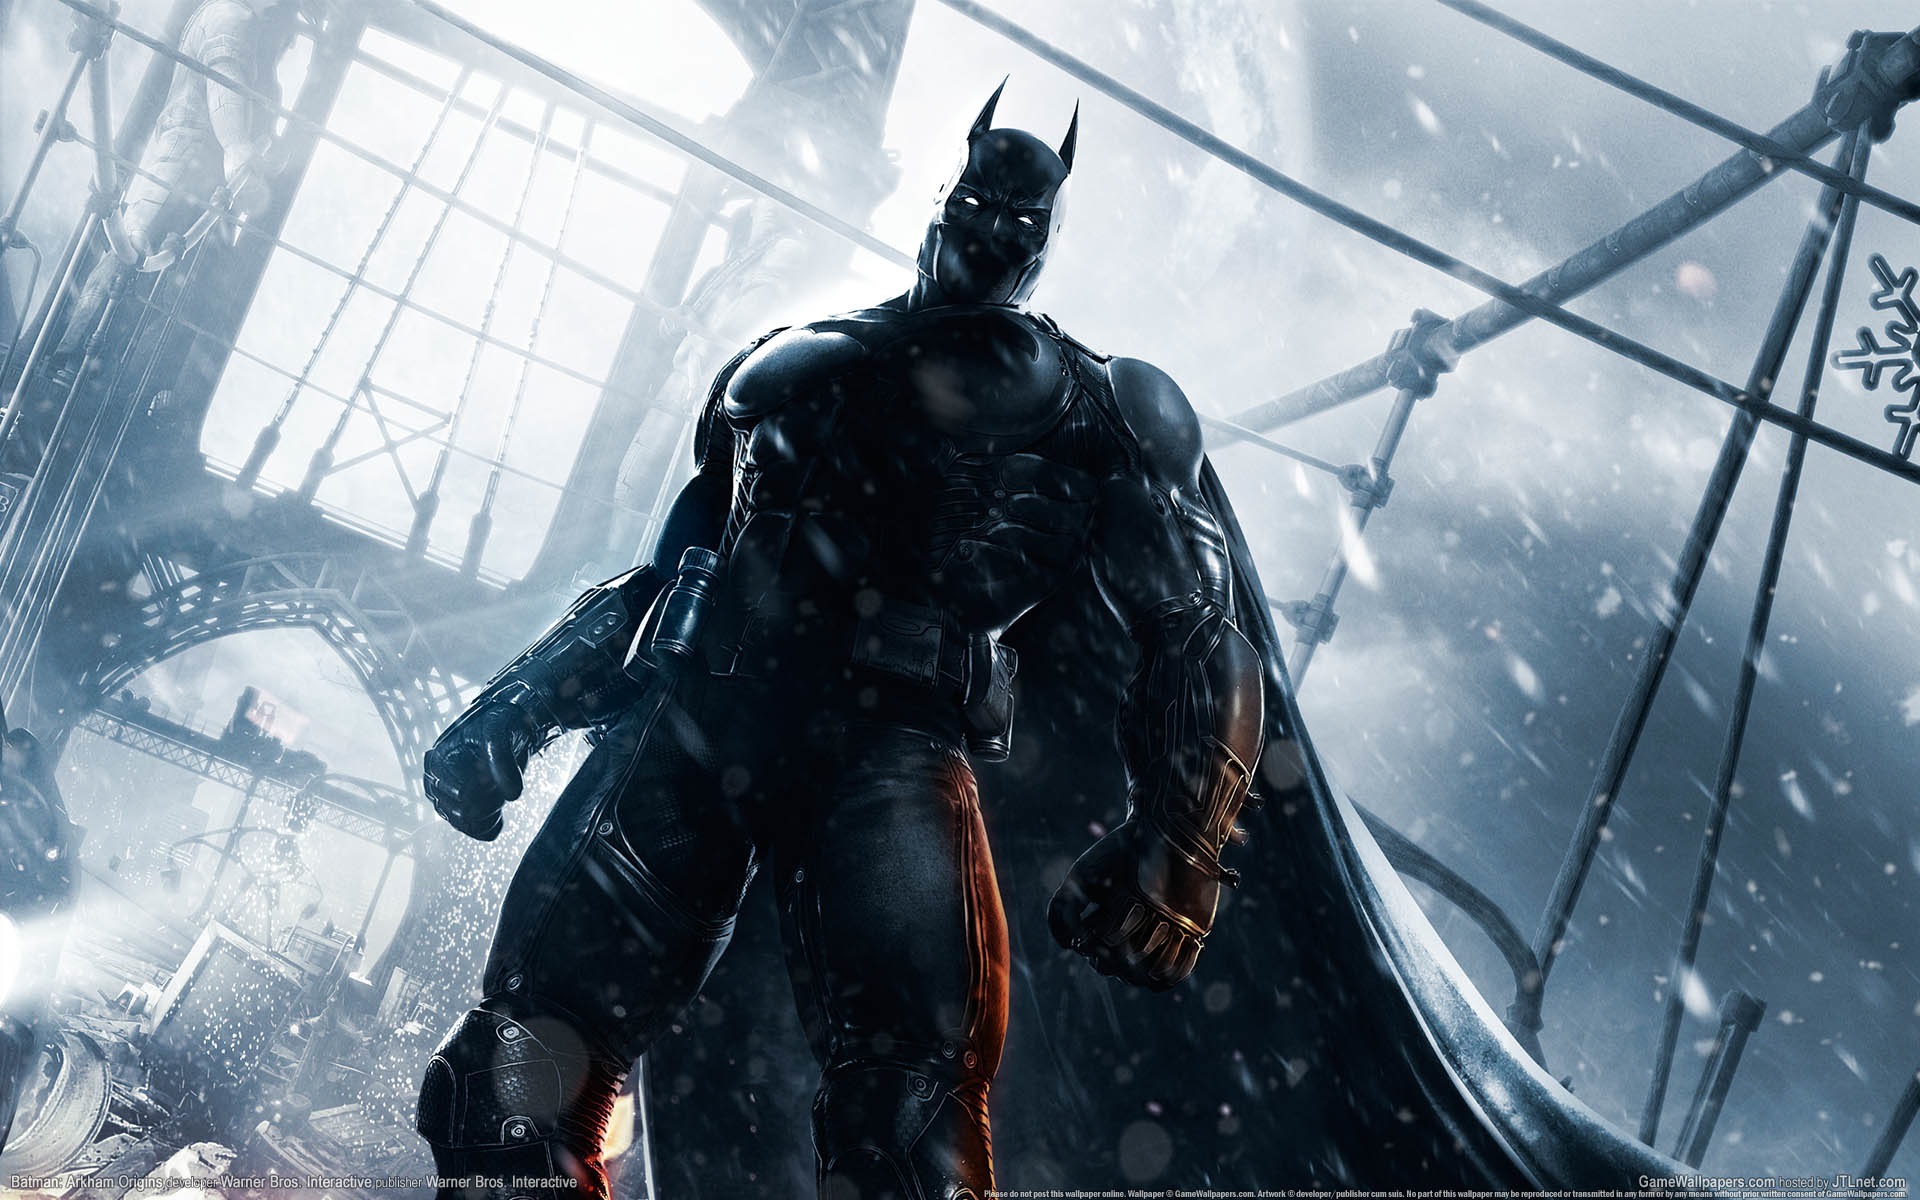 Arkham Origins, Pc Games - Batman Arkham Origins Wallpaper 4k - HD Wallpaper 